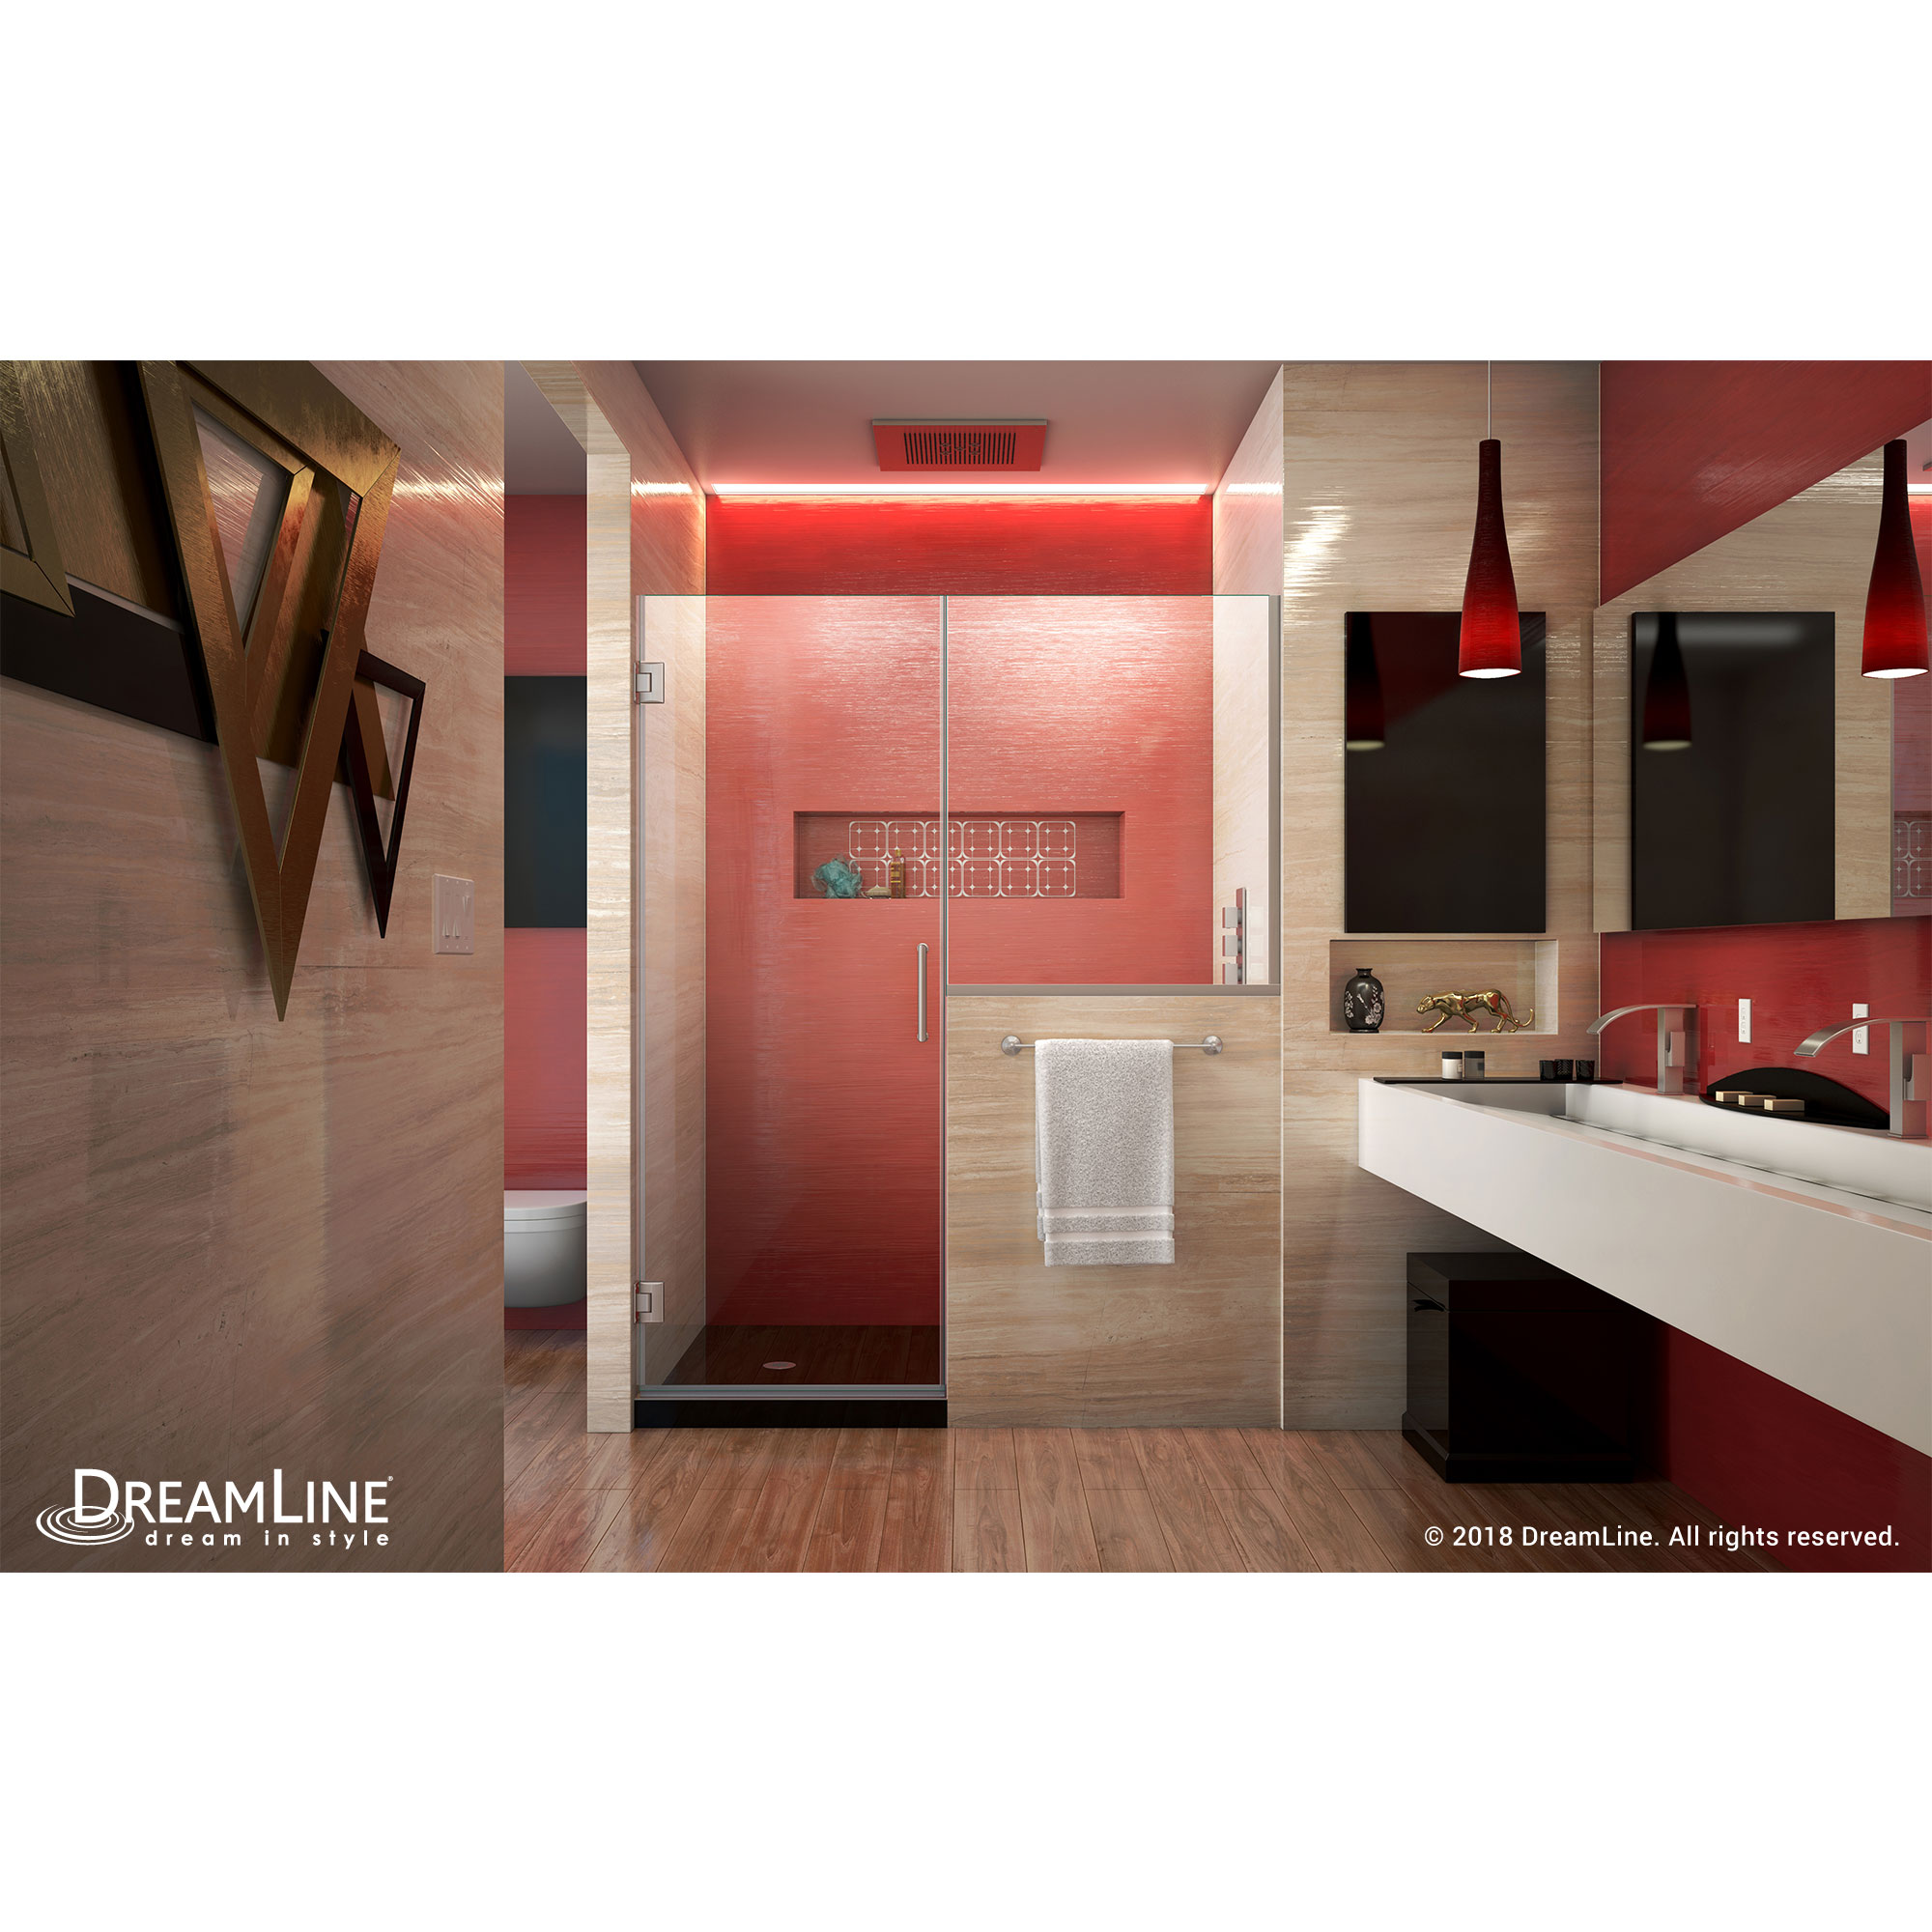 DreamLine Unidoor Plus 59-59 1/2 in. W x 72 in. H Hinged Shower Door with 36 in. Half Panel, Clear Glass, Brushed Nickel